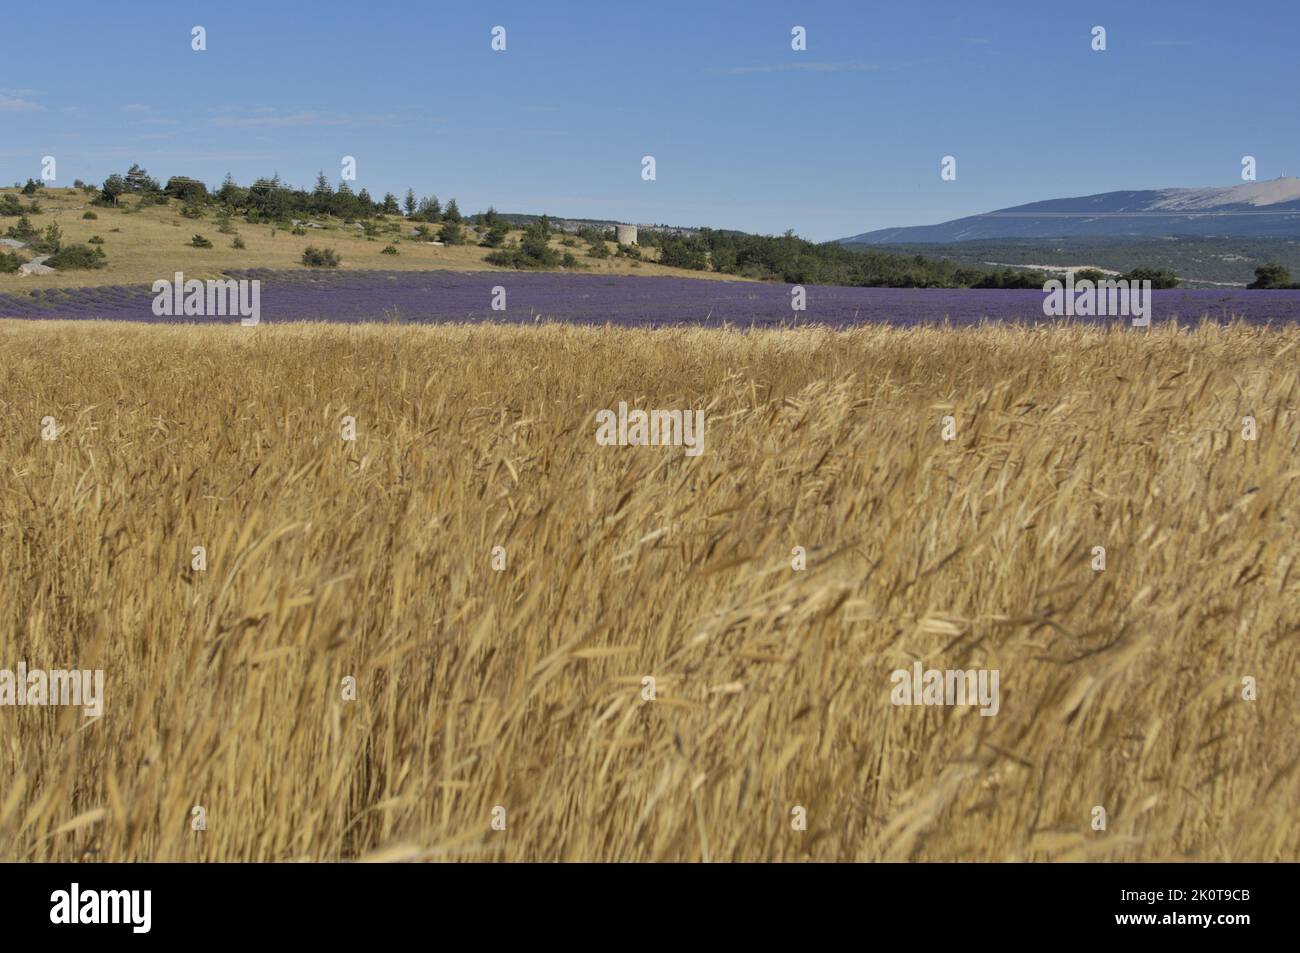 Lavendel (Lavandula sp) und Dinkel - Dinkelweizen - geschälter Weizen (Triticum spelta) Blumenfeld bereit zur Ernte - Provence - Frankreich Stockfoto